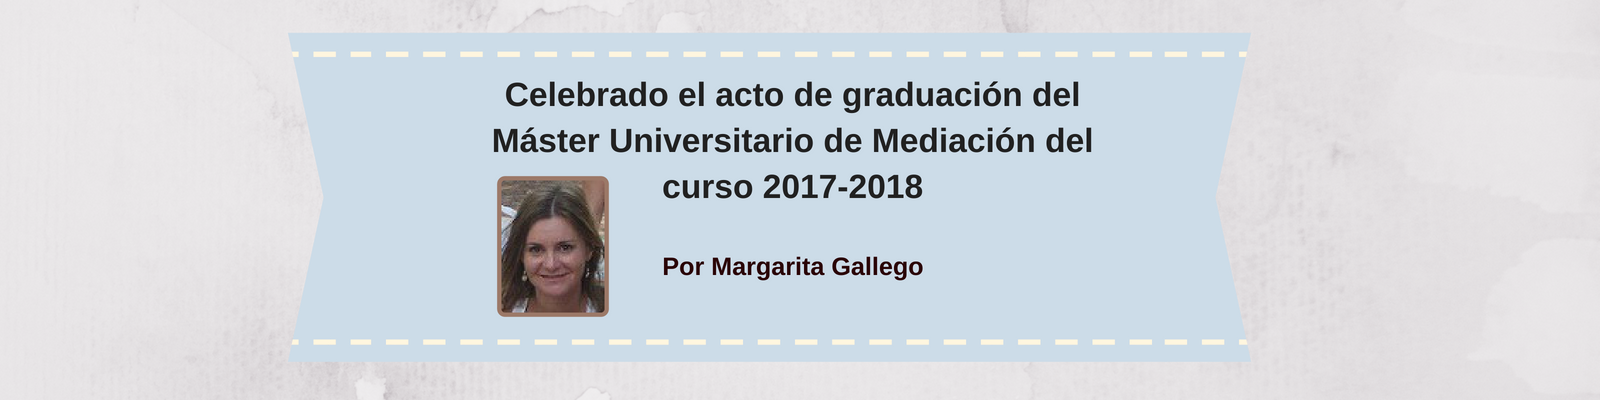 Celebrado el acto de graduación del Máster Universitario de Mediación del curso 2017-2018. Por Margarita Gallego Sánchez